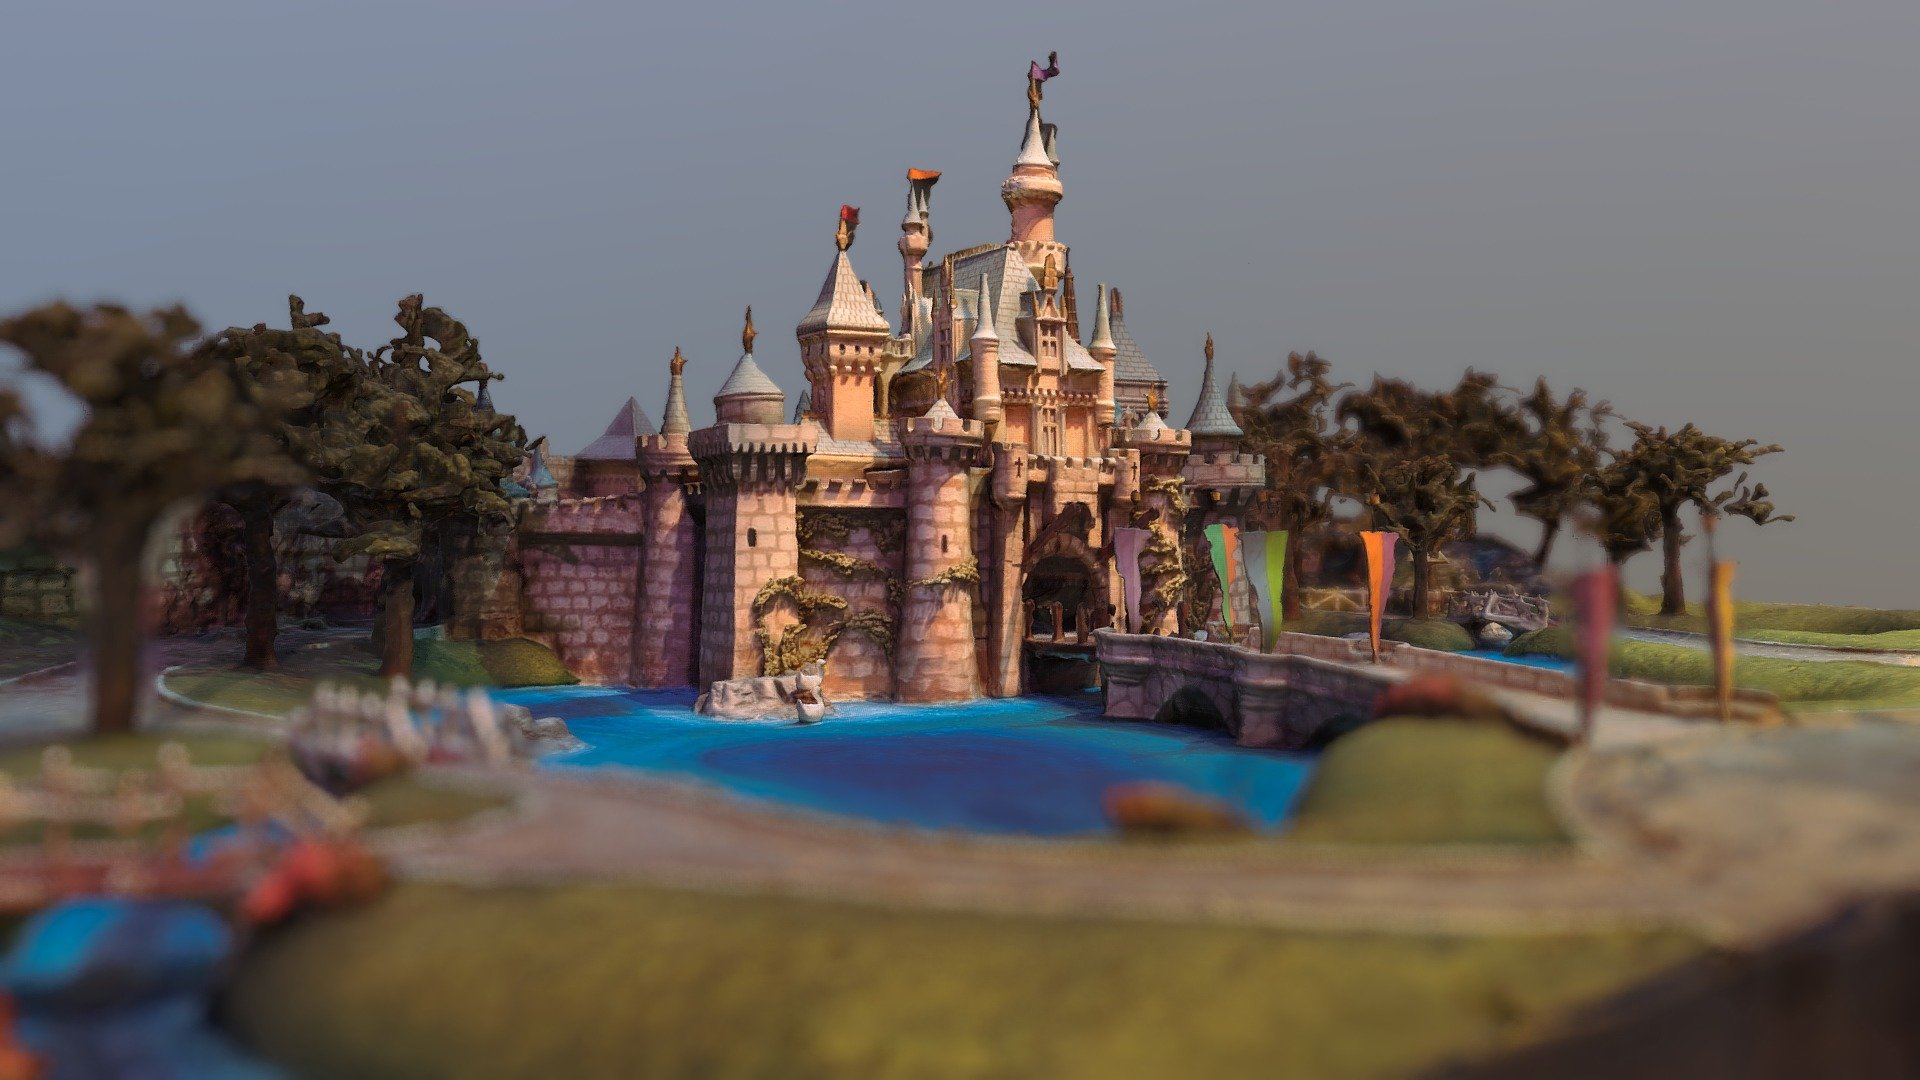 Sleeping Beauty Castle Model - Download Free 3D model by Reverse